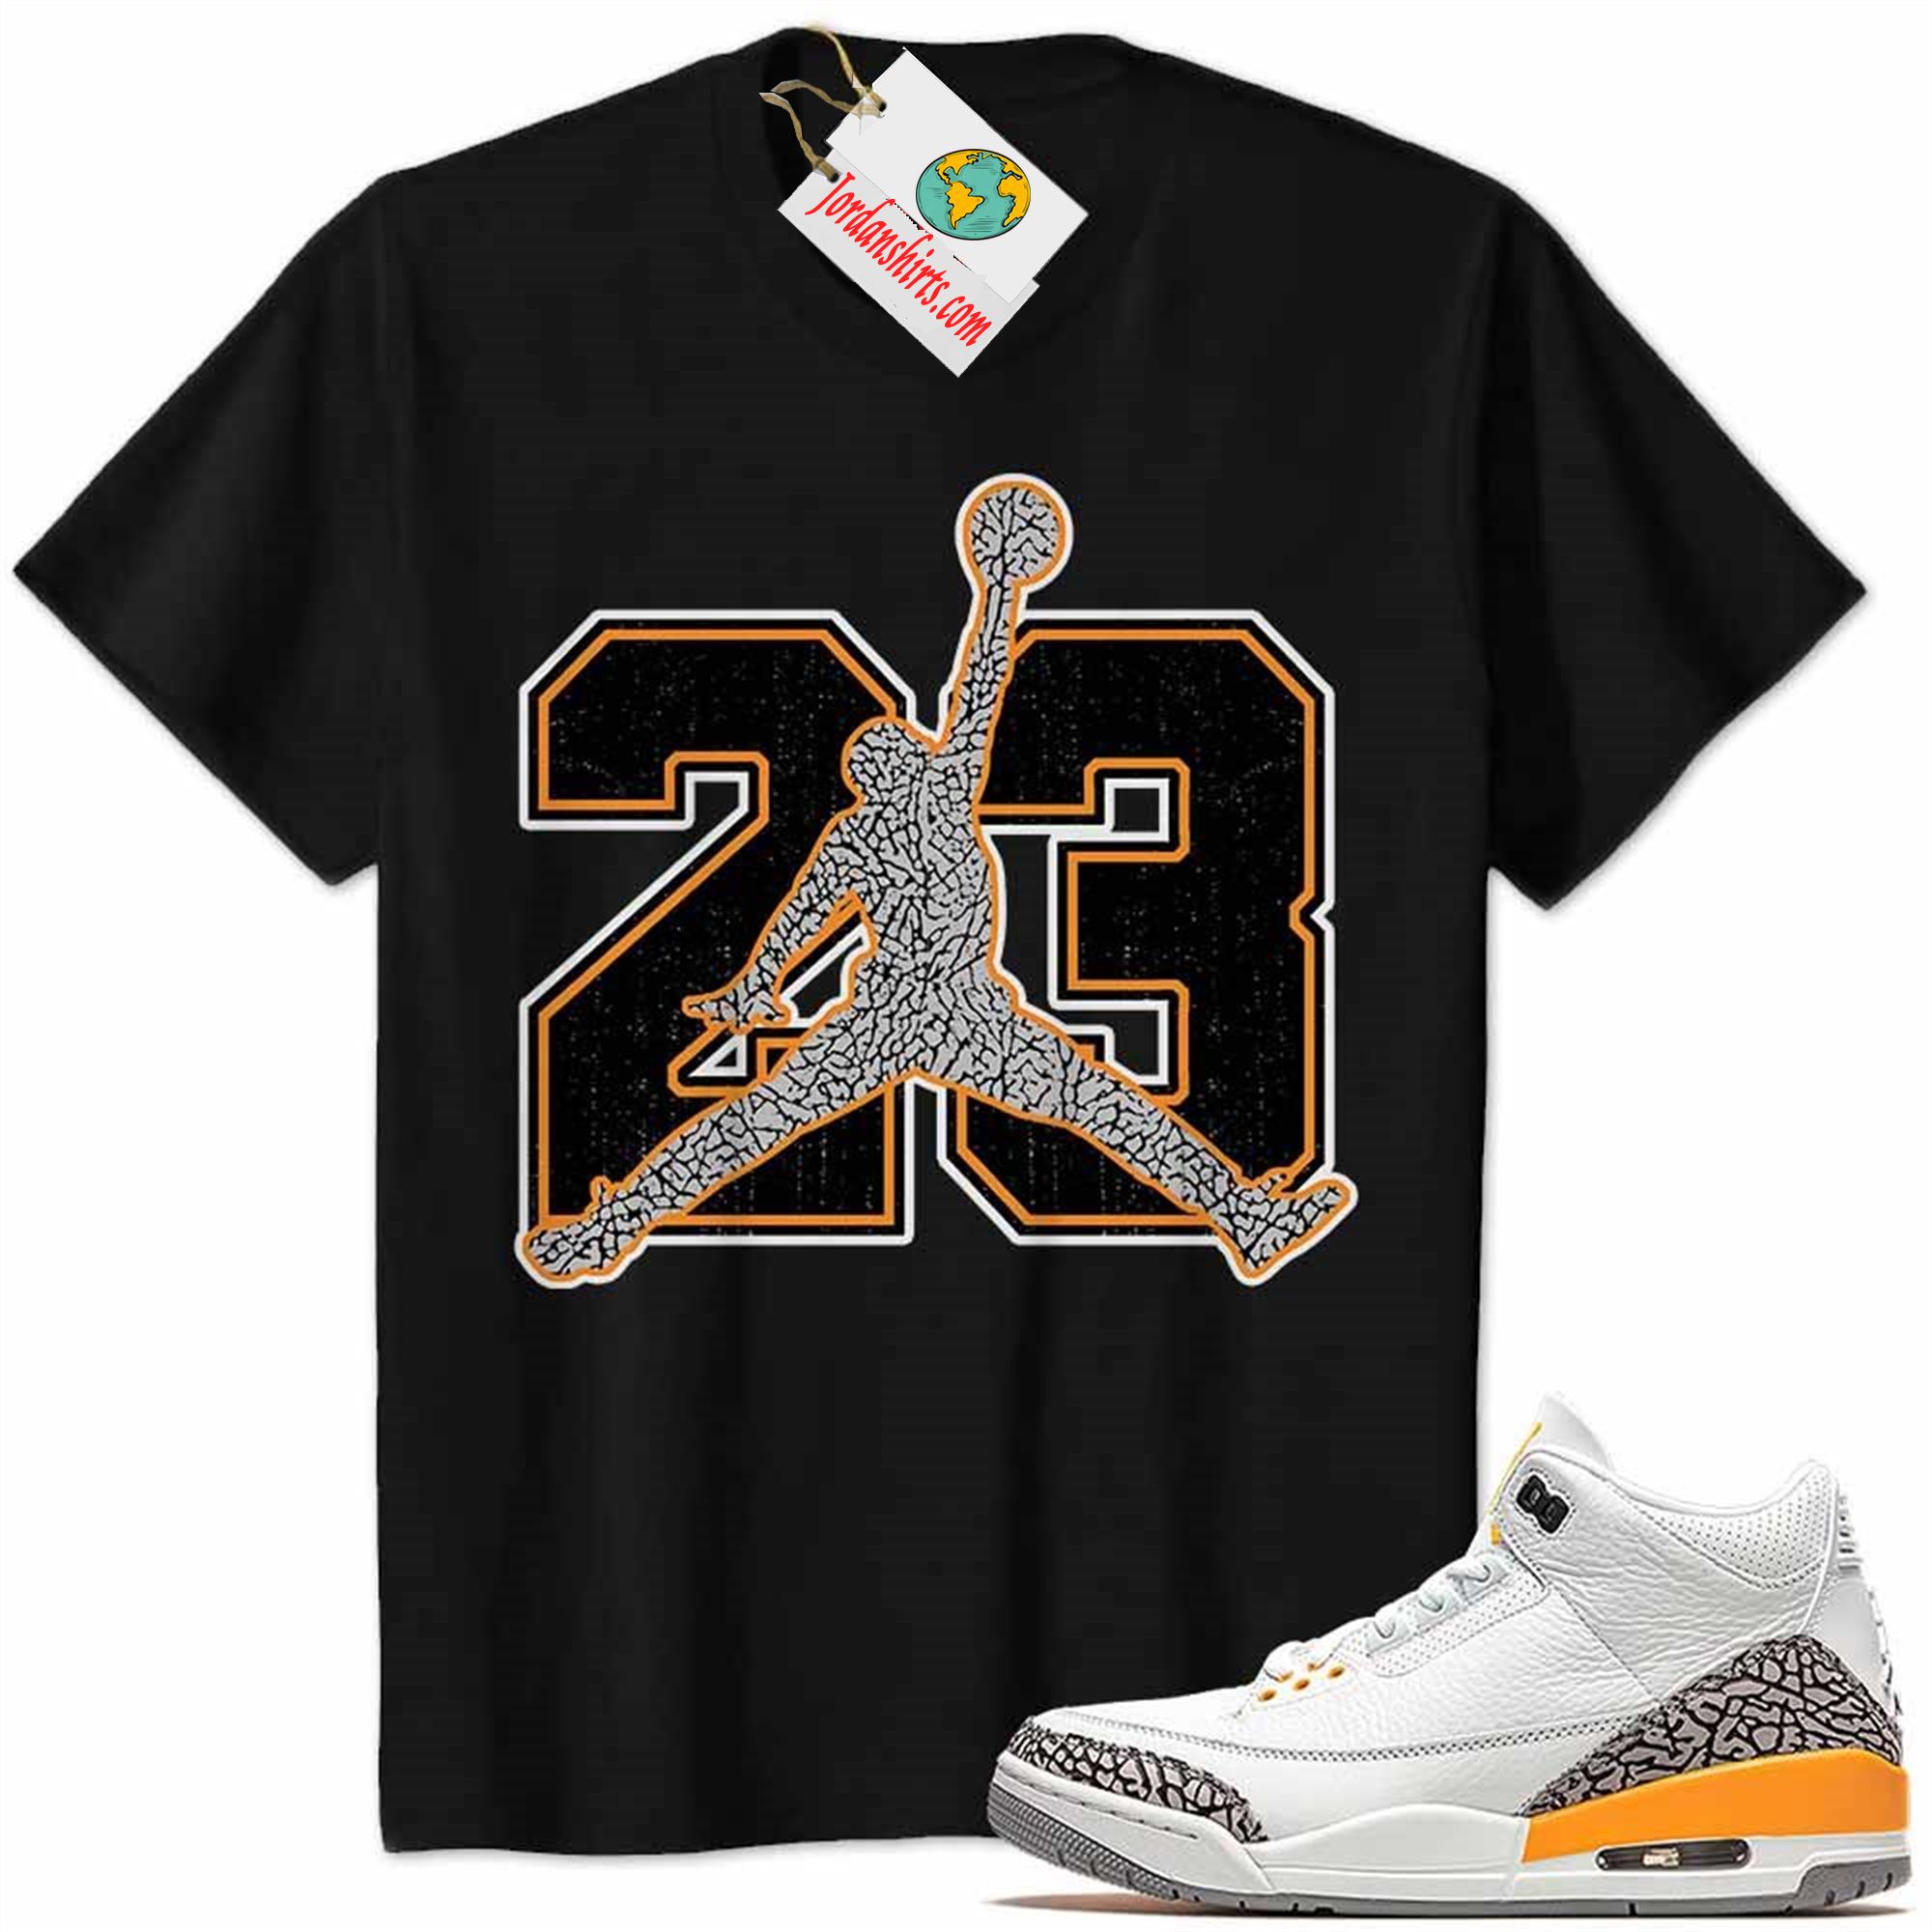 Jordan 3 Shirt, Jordan 3 Laser Orange Shirt Jumpman No23 Black Full Size Up To 5xl